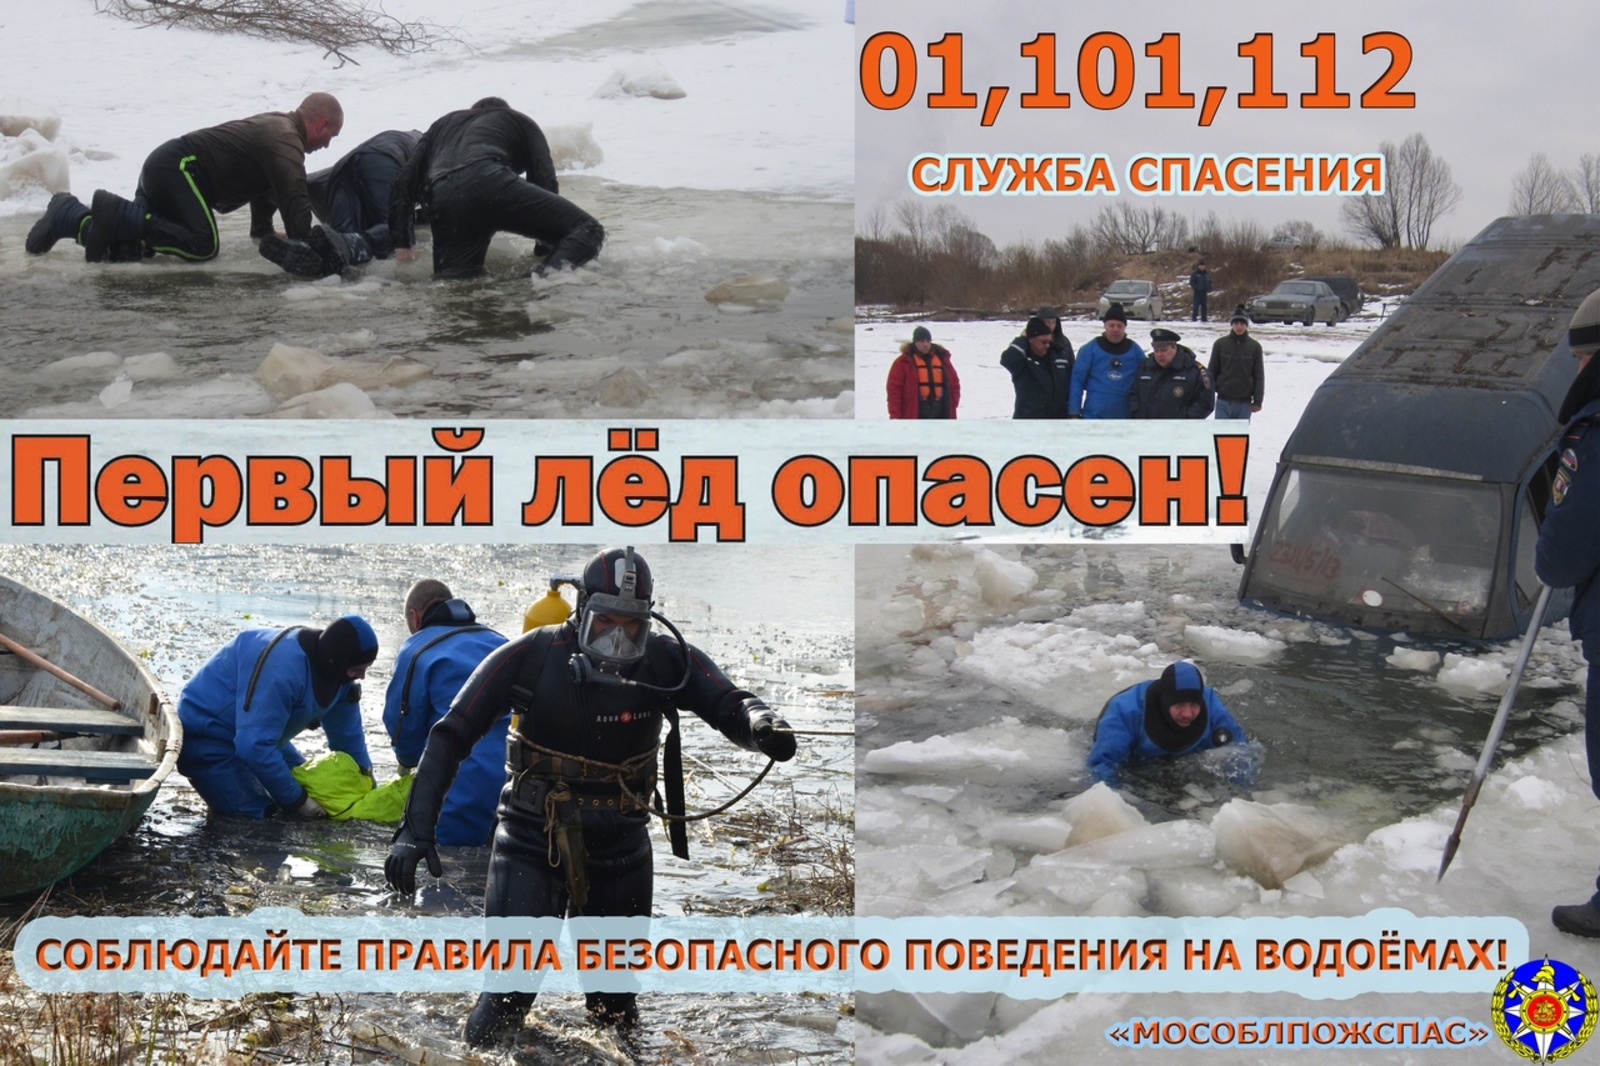 Жителям Бижбулякского района напомнили о правилах безопасности на водных объектах во время осеннего ледостава